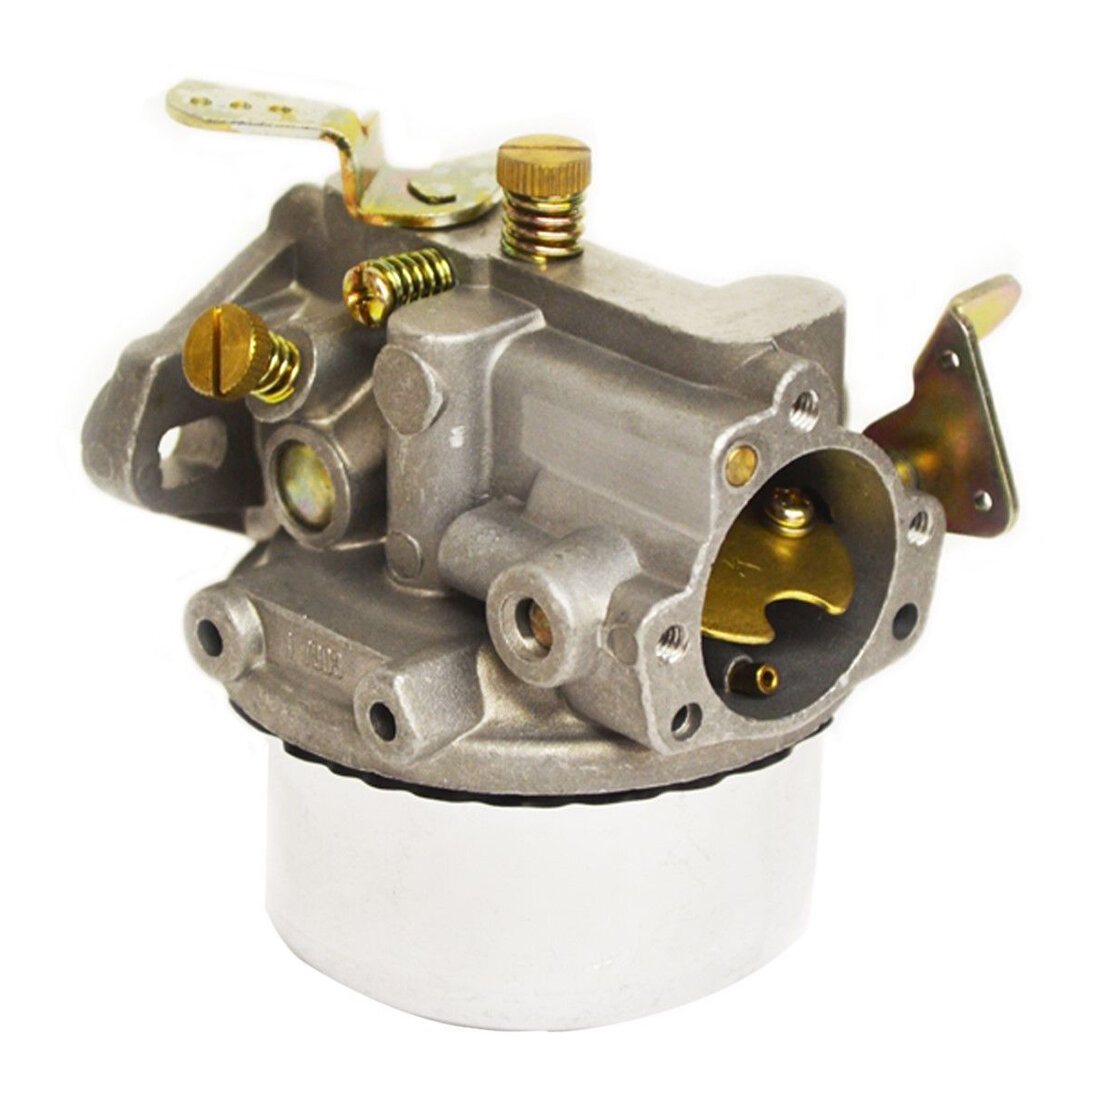 For Engine Motor Carburetor For K90 K91 K141 K160 K161 K181 Engines